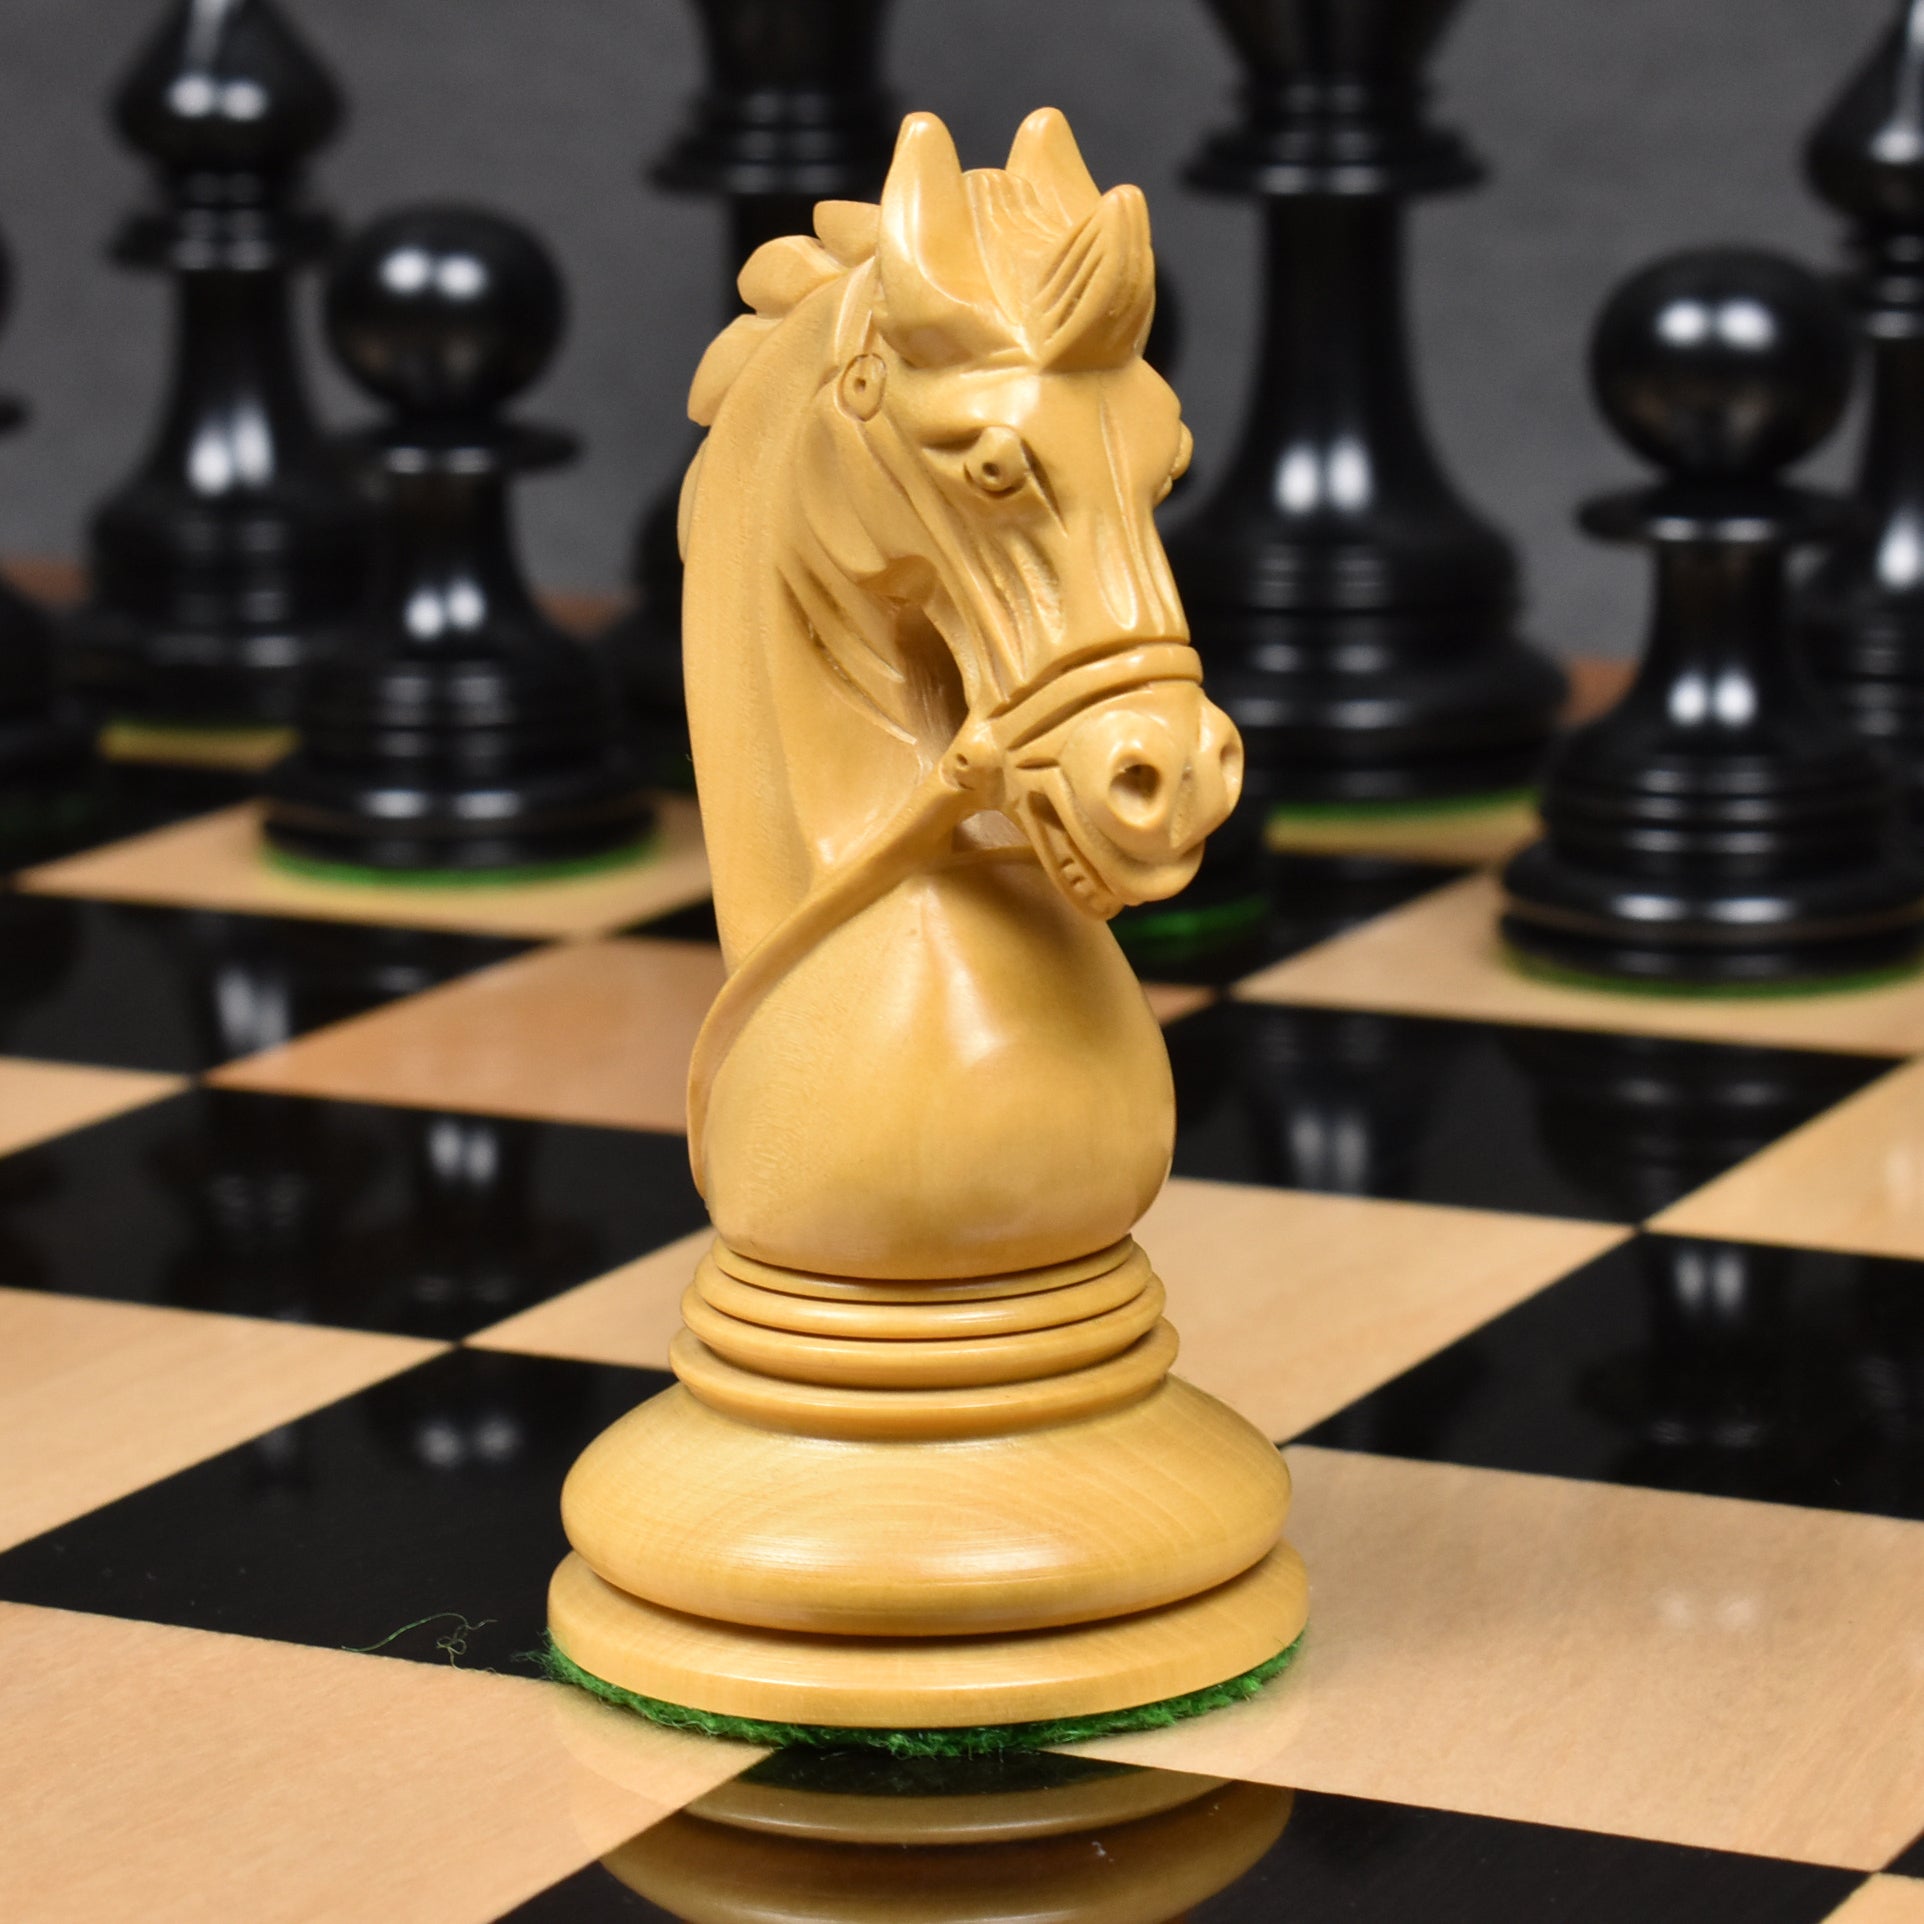 4.1 Stallion Staunton Luxury Chess Pieces Only Set -  Portugal